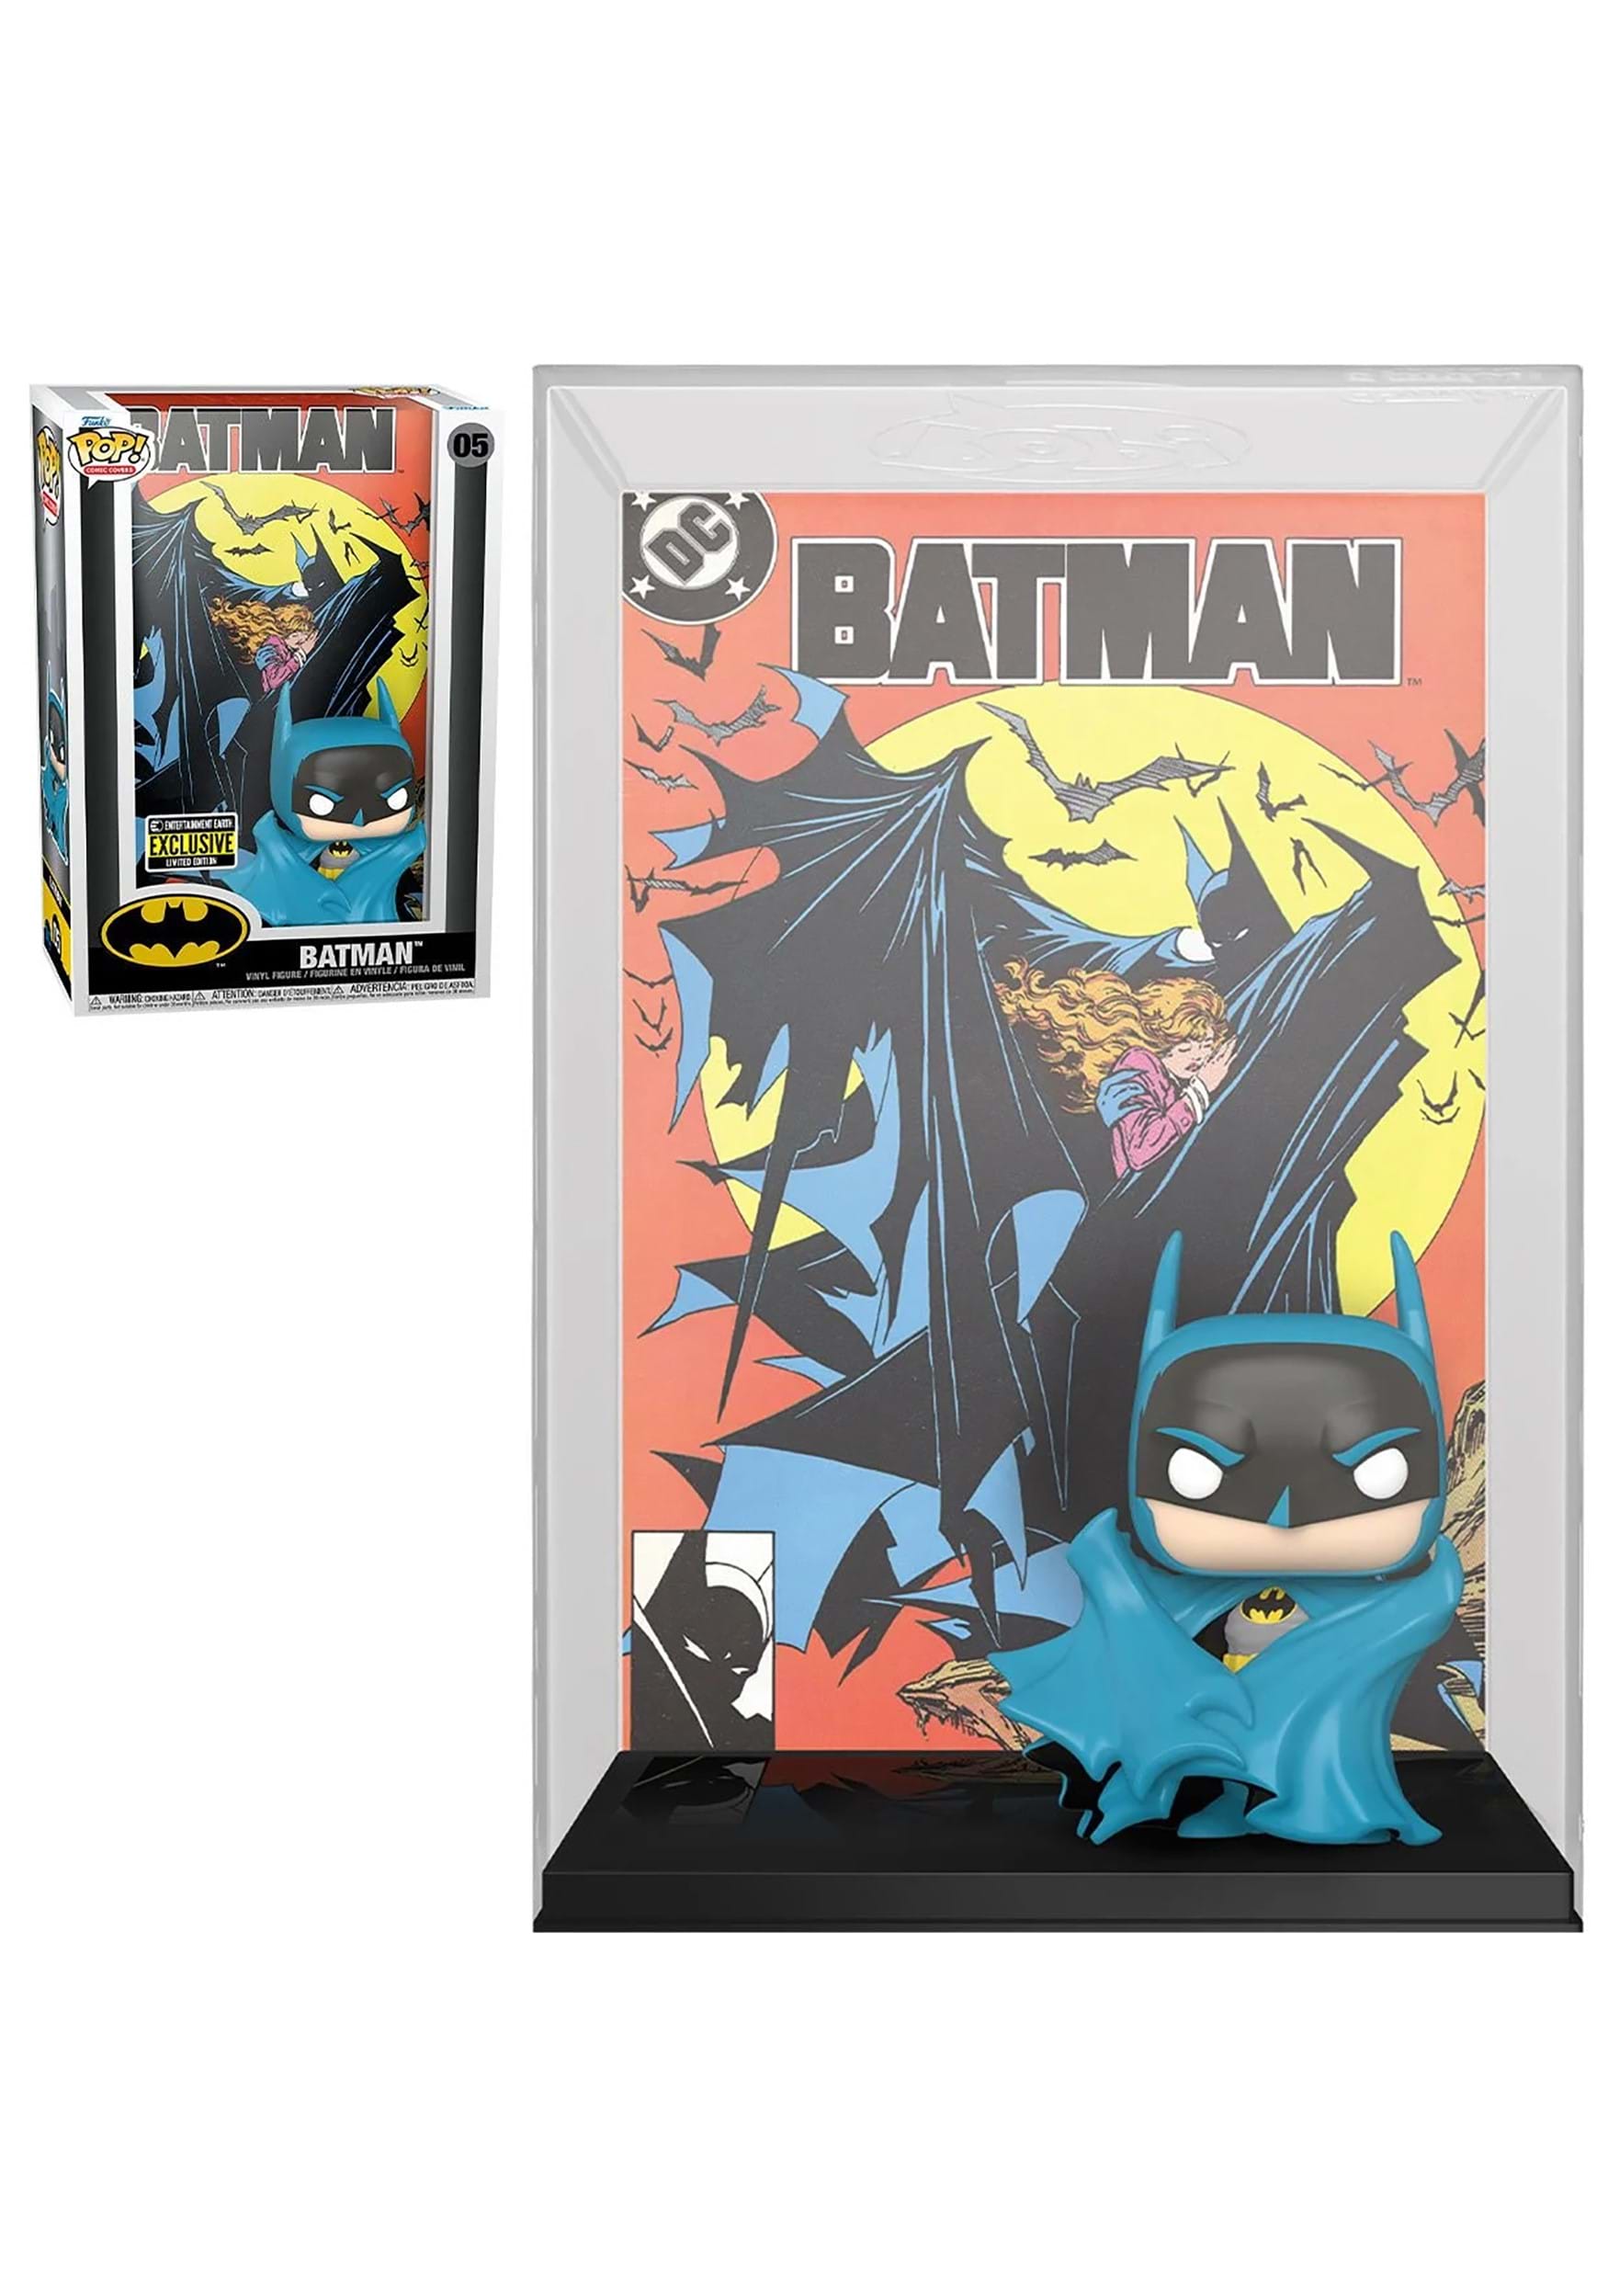 https://images.fun.com/products/83128/1-1/dc-comics-batman-423-mcfarlane-pop-comic-cover-f.jpg